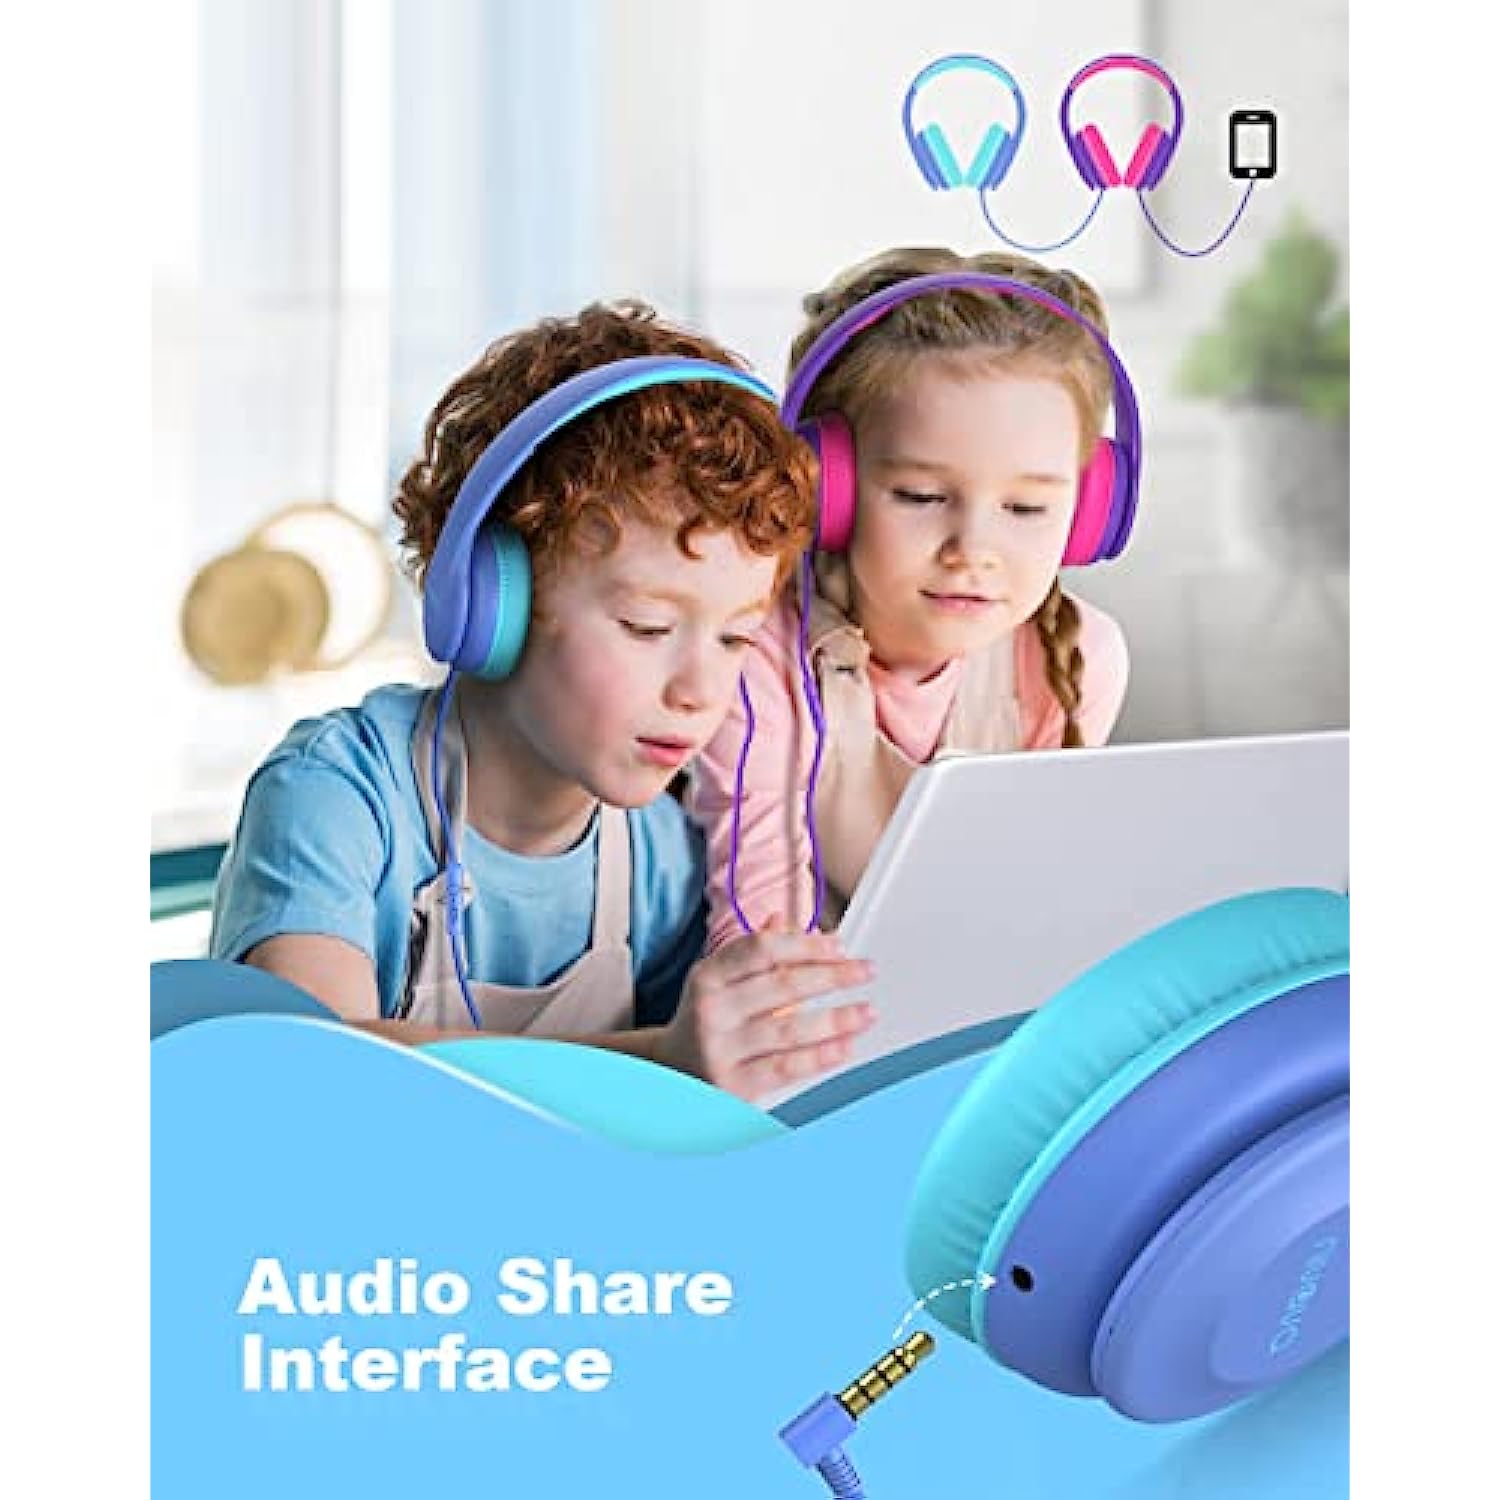 Auriculares para niños para la escuela, auriculares para niños con  micrófono, función de compartir, límite de volumen seguro de 85 dB/94 dB,  sonido